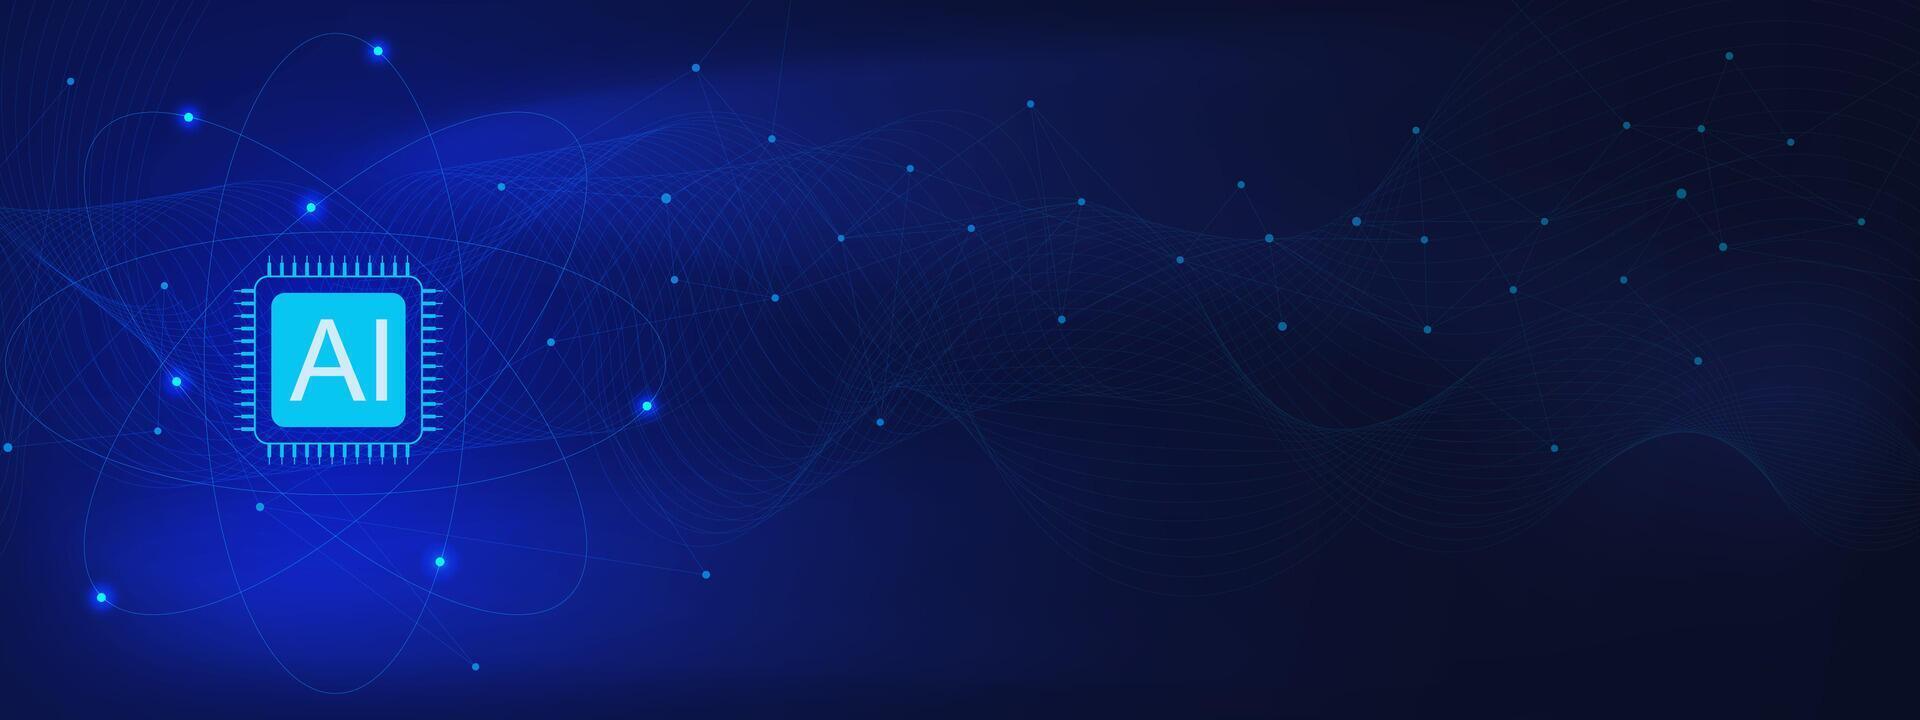 Mikrochip mit verbinden Punkte und Linien zum Netzwerk Verbindung. hoch Computer Technologie und künstlich Intelligenz Konzept auf dunkel Blau Hintergrund. Vektor Illustration.